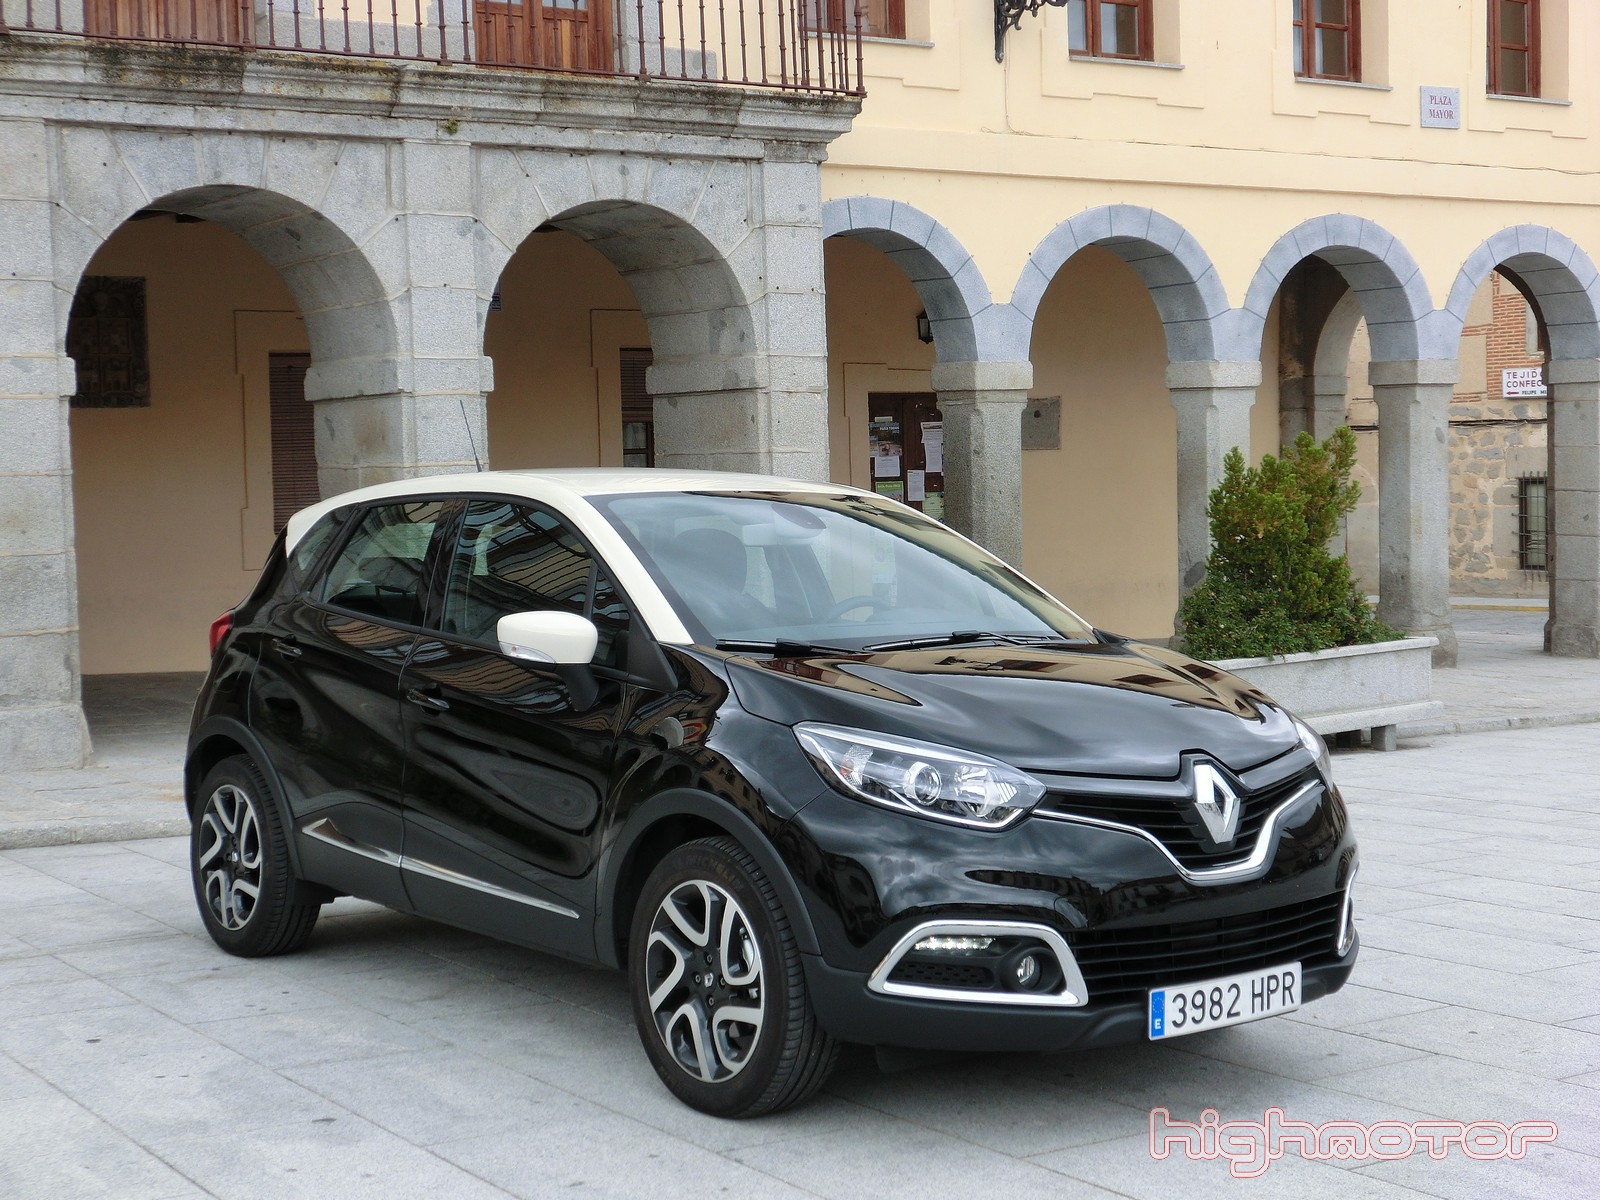 Renault afirma que sus vehículos no están equipados con dispositivos fraudulentos